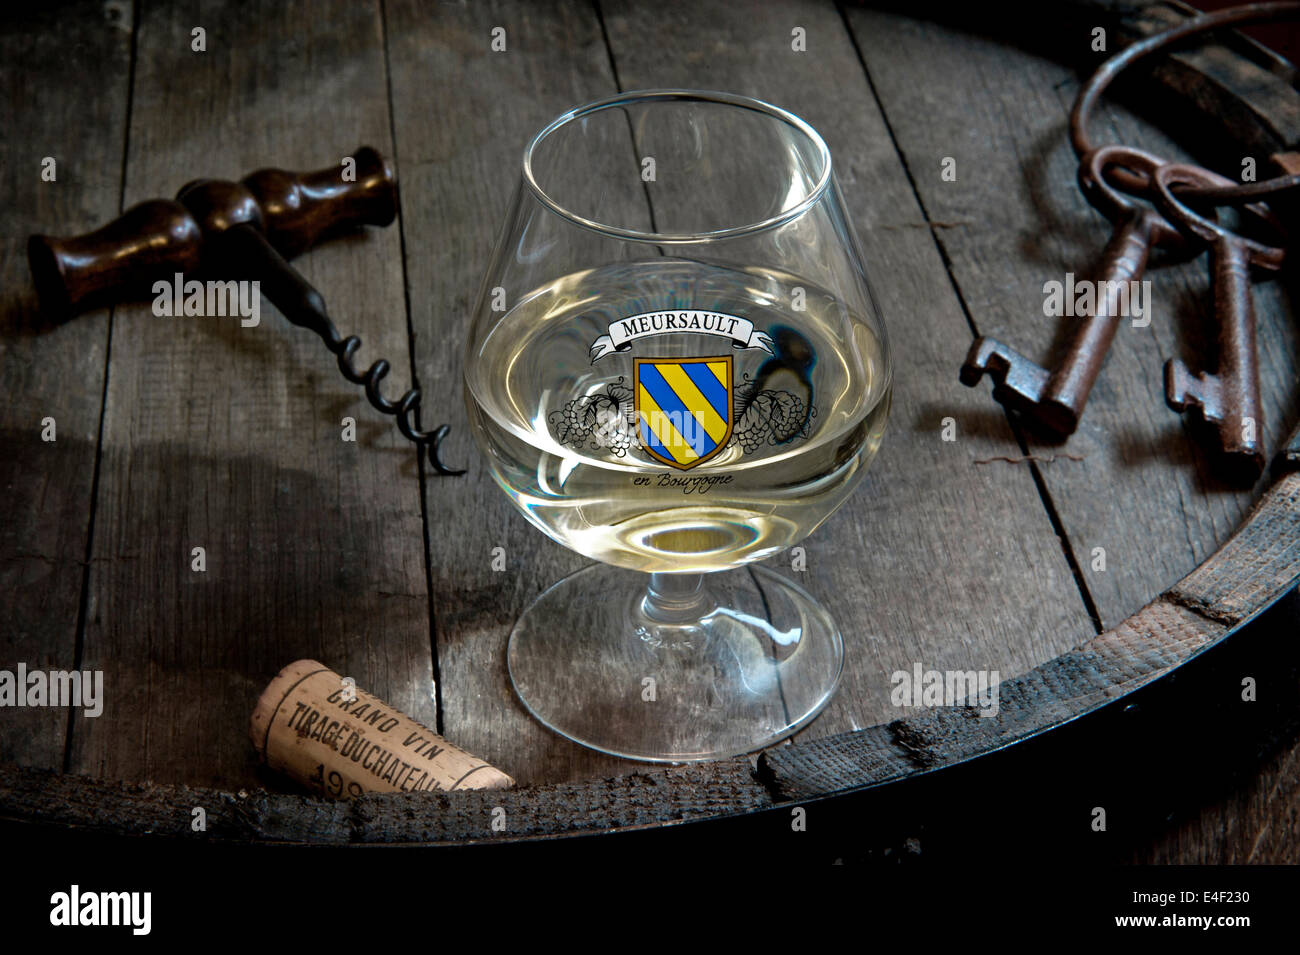 MEURSAULT vino francese Situazione di degustazione in cantina con vetro di Meursault bianco fine Borgogna Chardonnay Premier Cru vino Cote d'Or Borgogna Francia Foto Stock